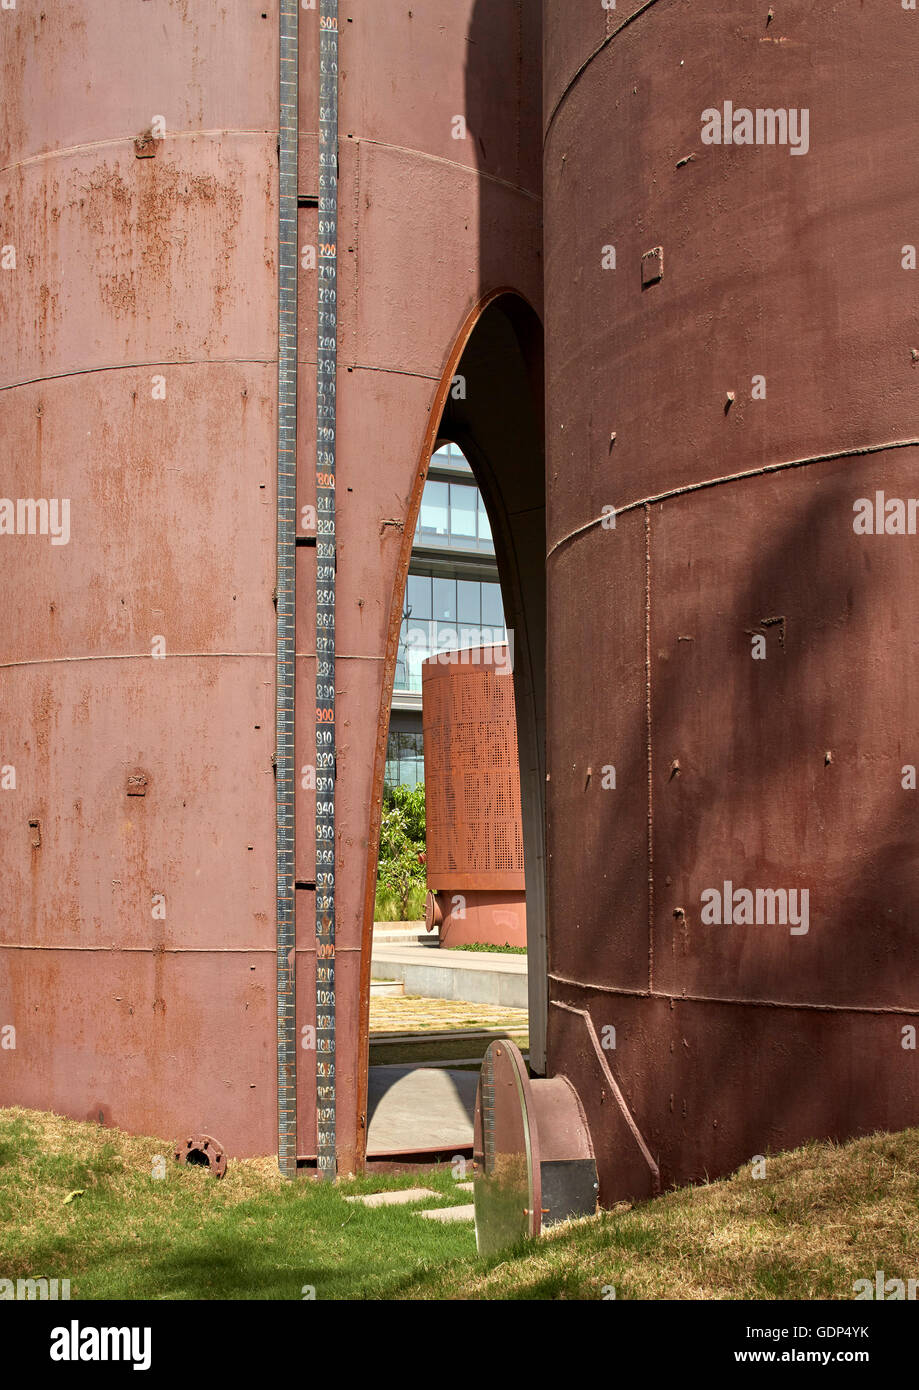 Convertito silo di storage. Immaginate di Studio presso gli alberi, Mumbai, India. Architetto: Studio Lotus, 2016. Foto Stock